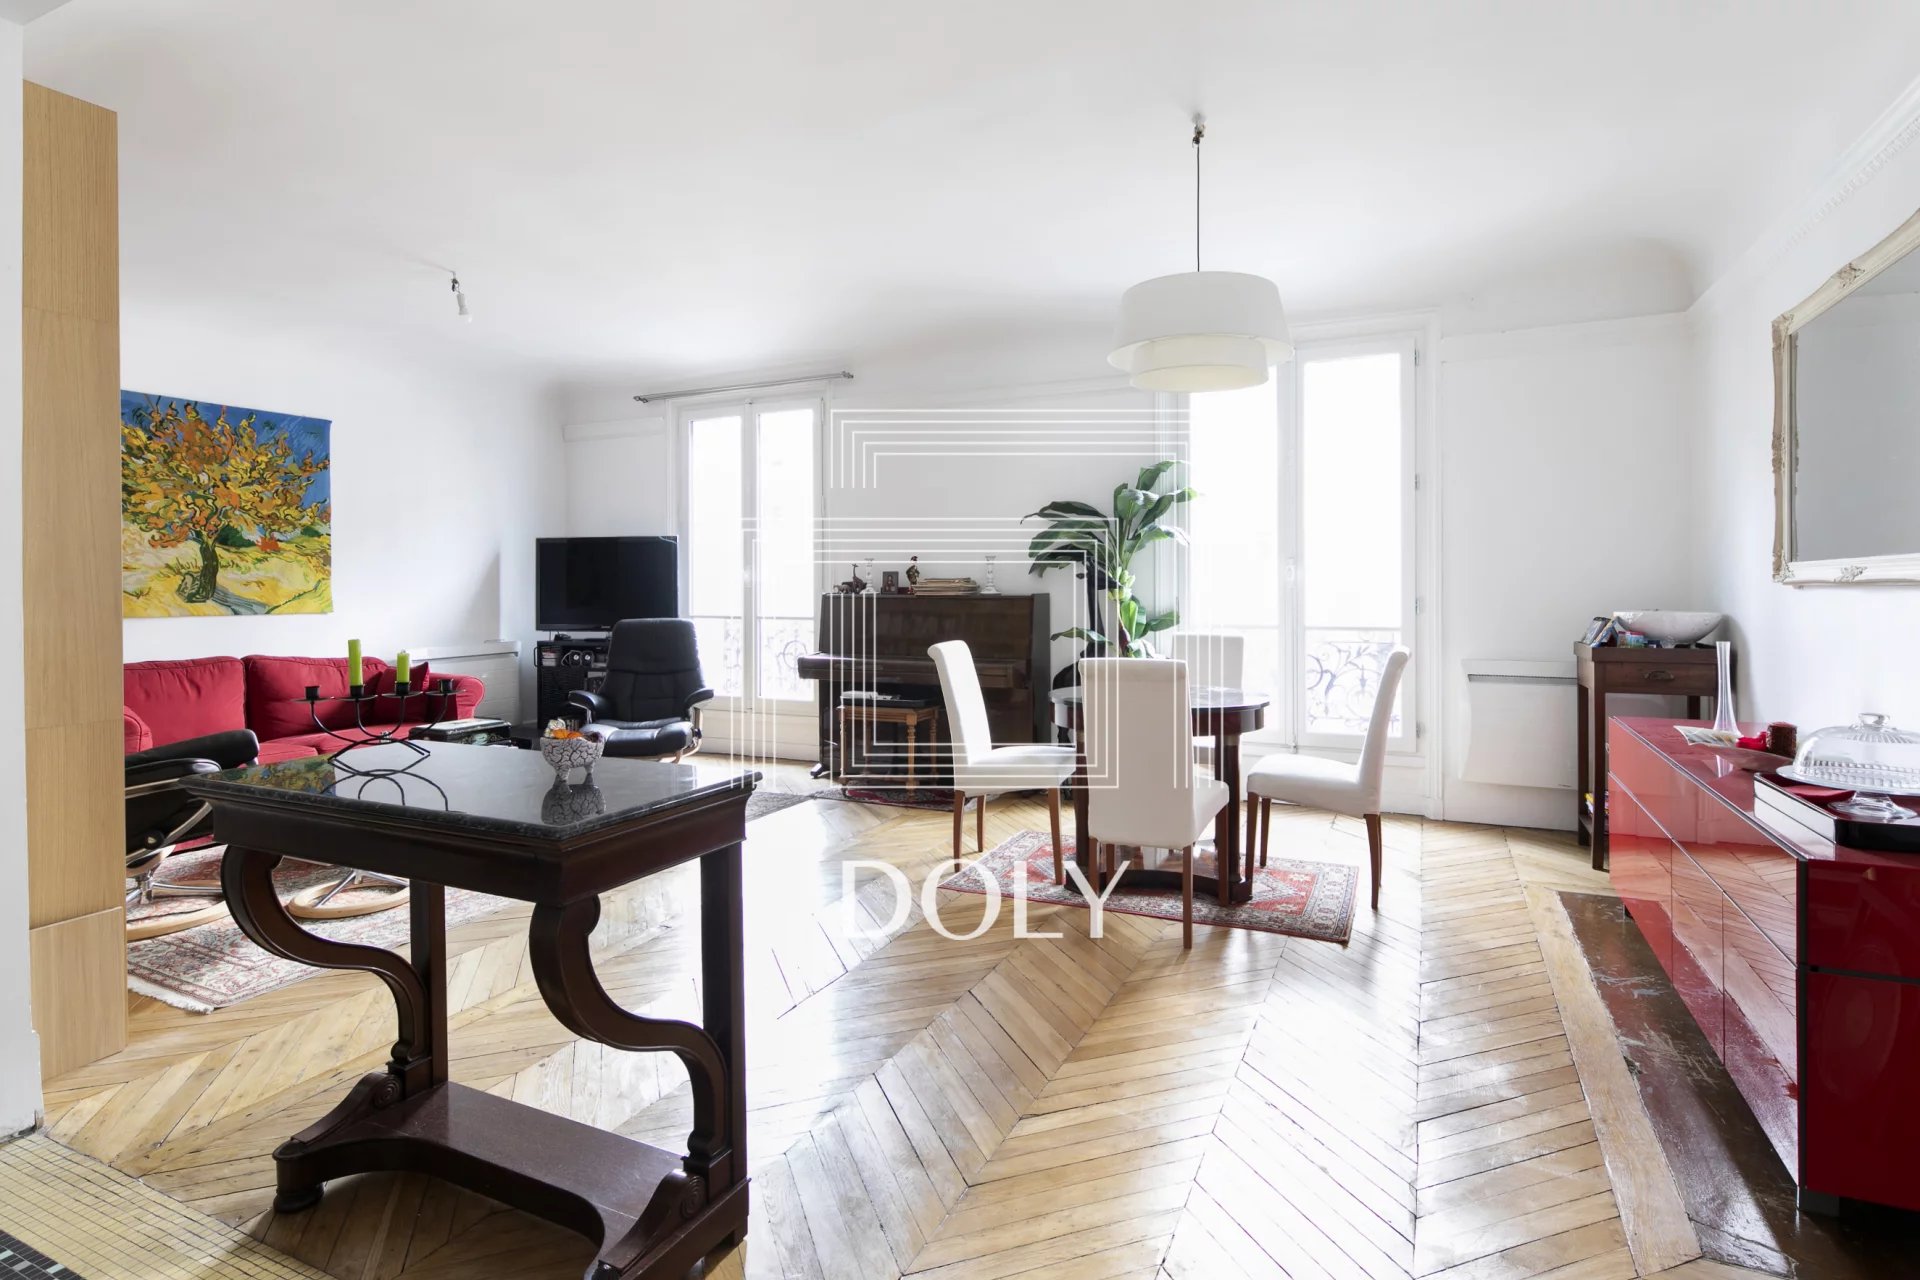 Appartement 3 pièces de 63 M2 – Rue de la Fontaine au Roi, 75011.